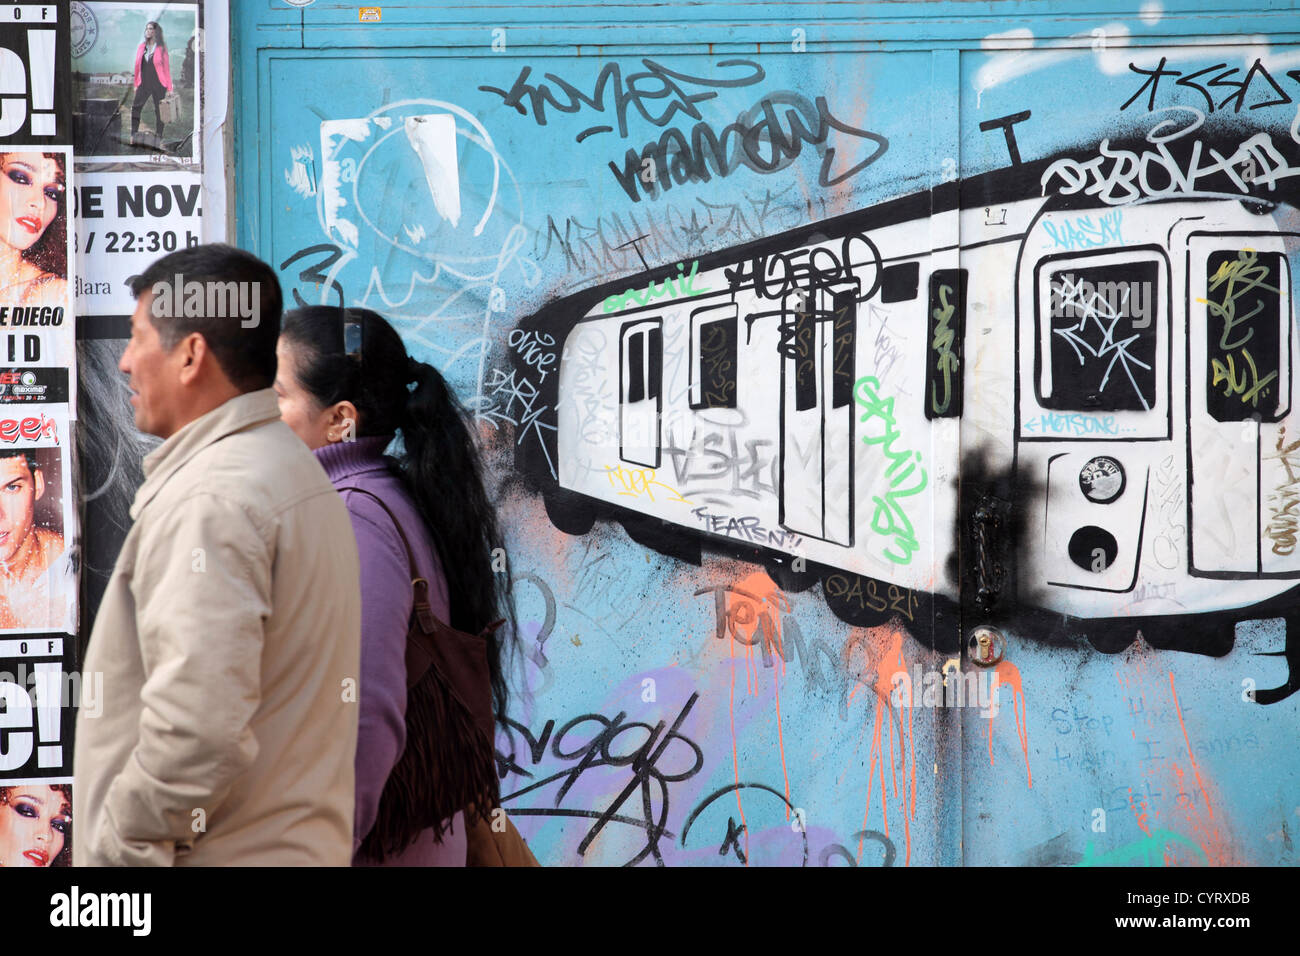 Street art Graffiti montrant tube métro train, deux passants, Madrid, Espagne Banque D'Images